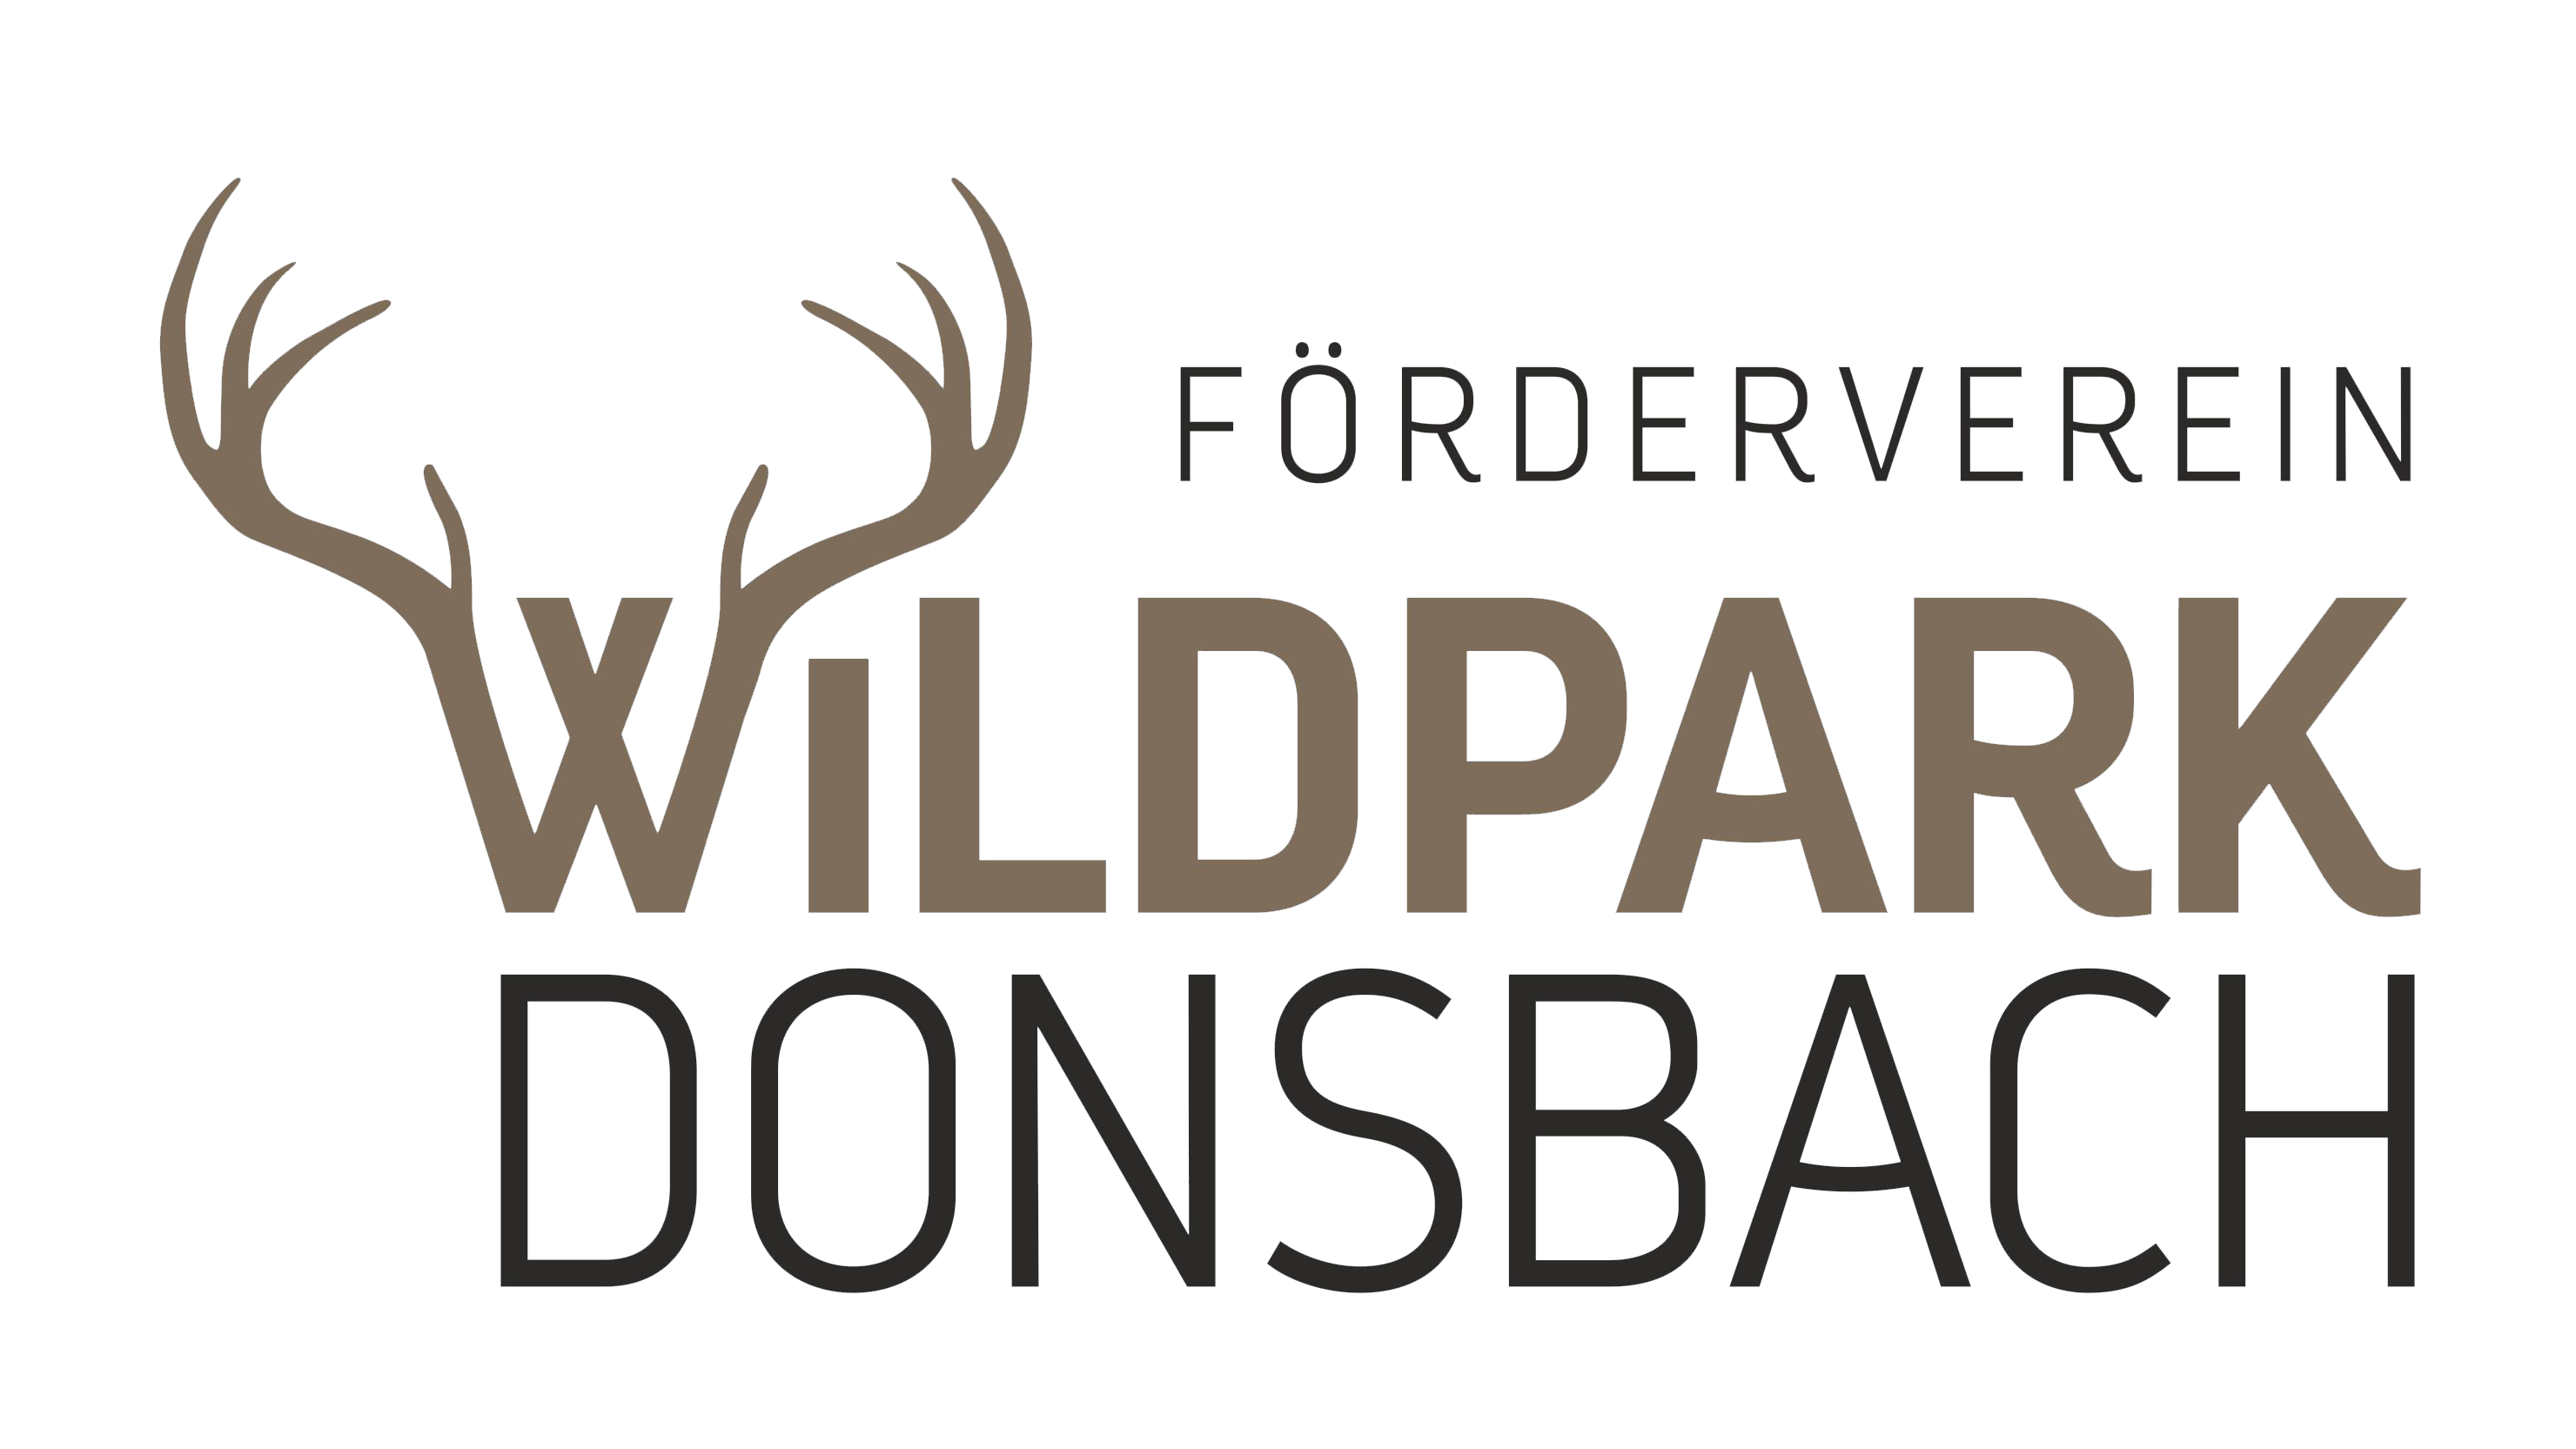 Logo des Fördervereins Wildpark Donsbach besteht aus drei Worten, Förderverein (schwarze Schrift), Wildpark (braune Schrift und das W von Wildpark ist wie ein Geweih gestaltet), Donsbach (schwarze Schrift). Die Worte stehen untereinander